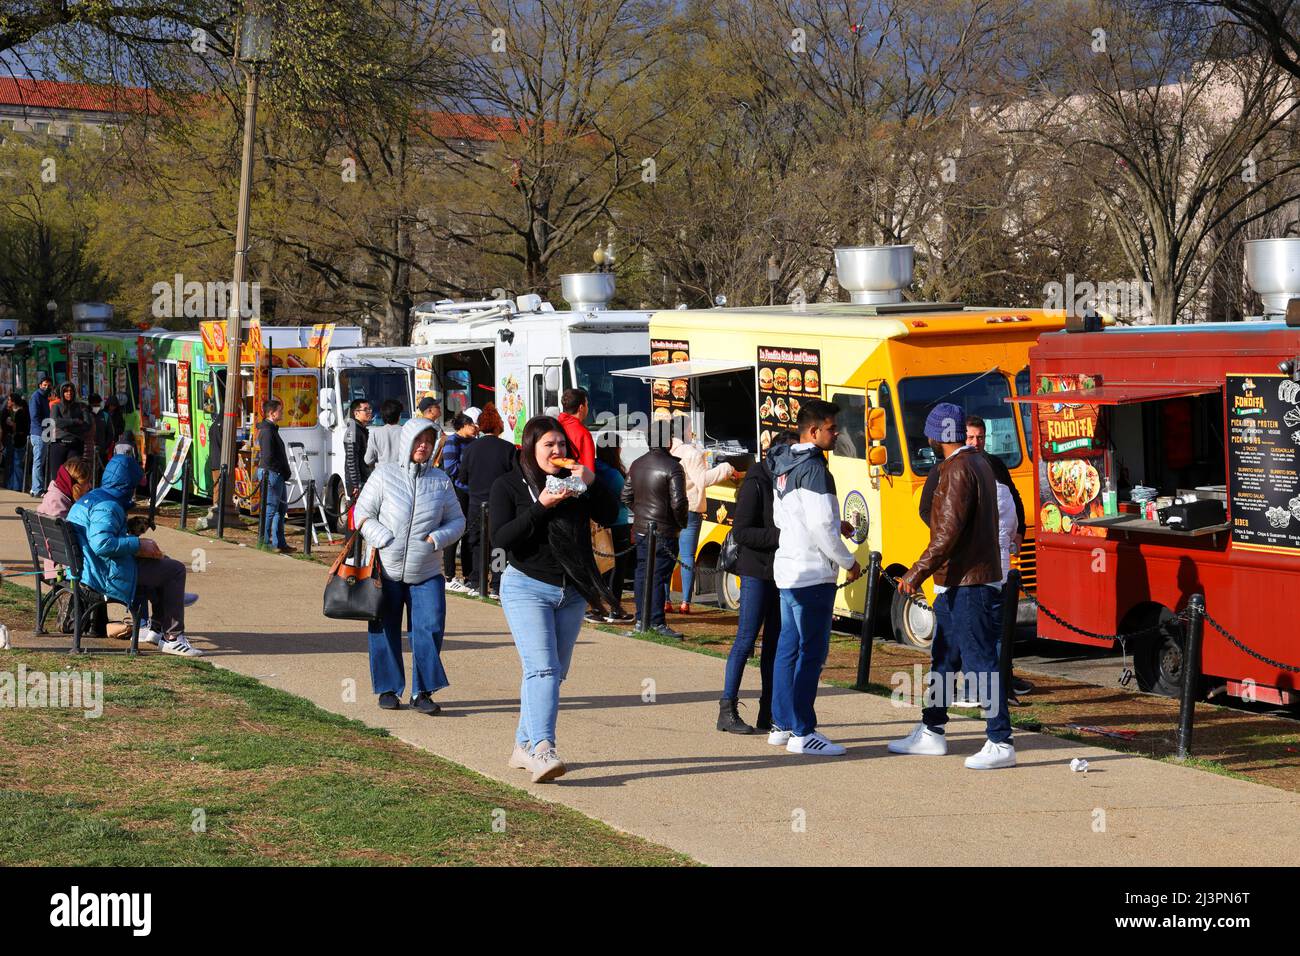 Les gens mangent et achètent de la nourriture à partir de dizaines de camions de nourriture bordés le long du National Mall, 7th St NW, Washington DC. Banque D'Images